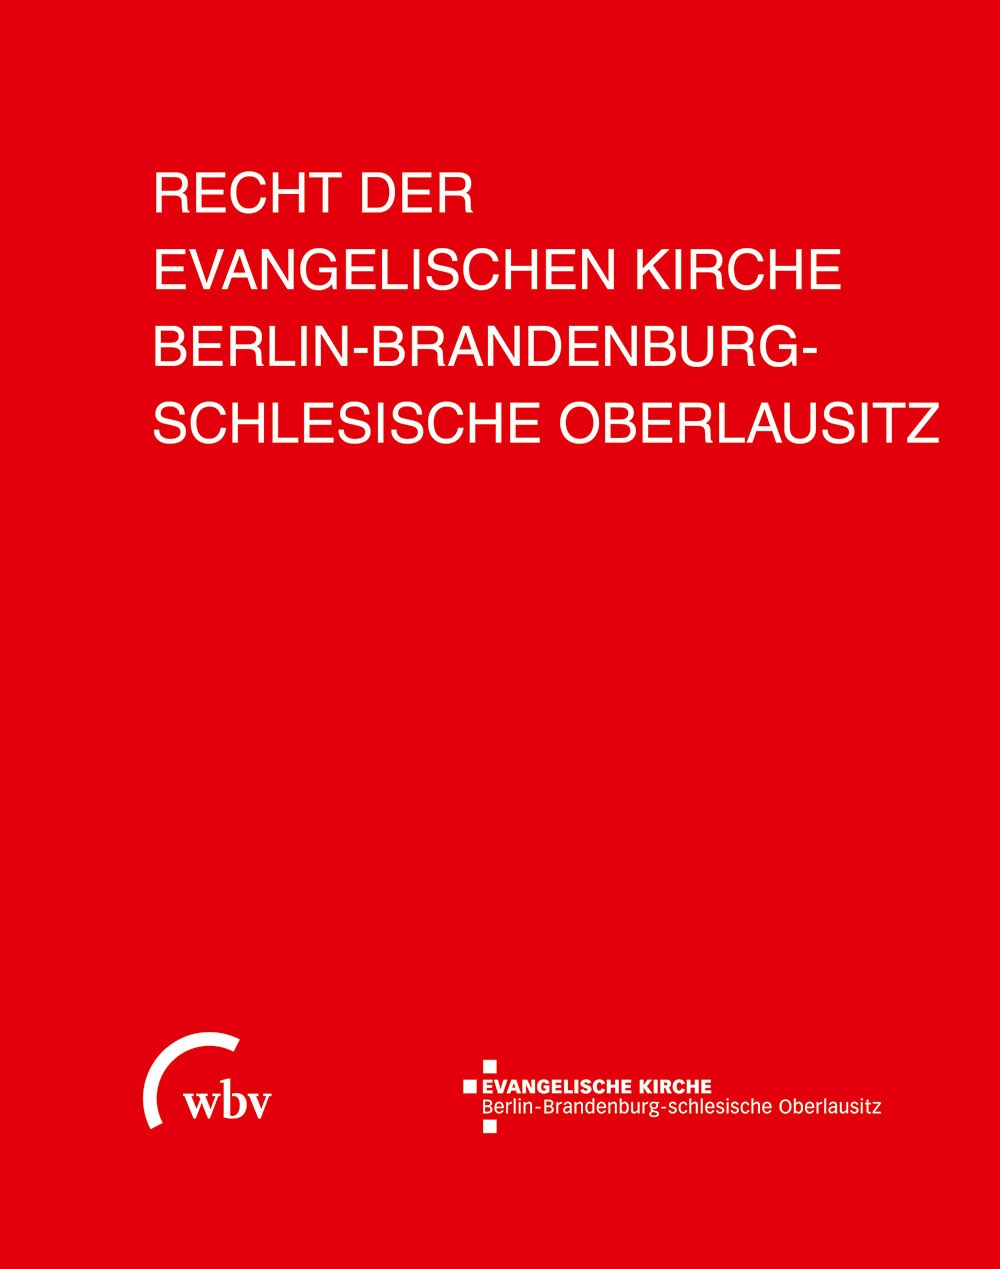 Das Recht der Evangelischen Kirche Berlin-Brandenburg-schlesische Oberlausitz